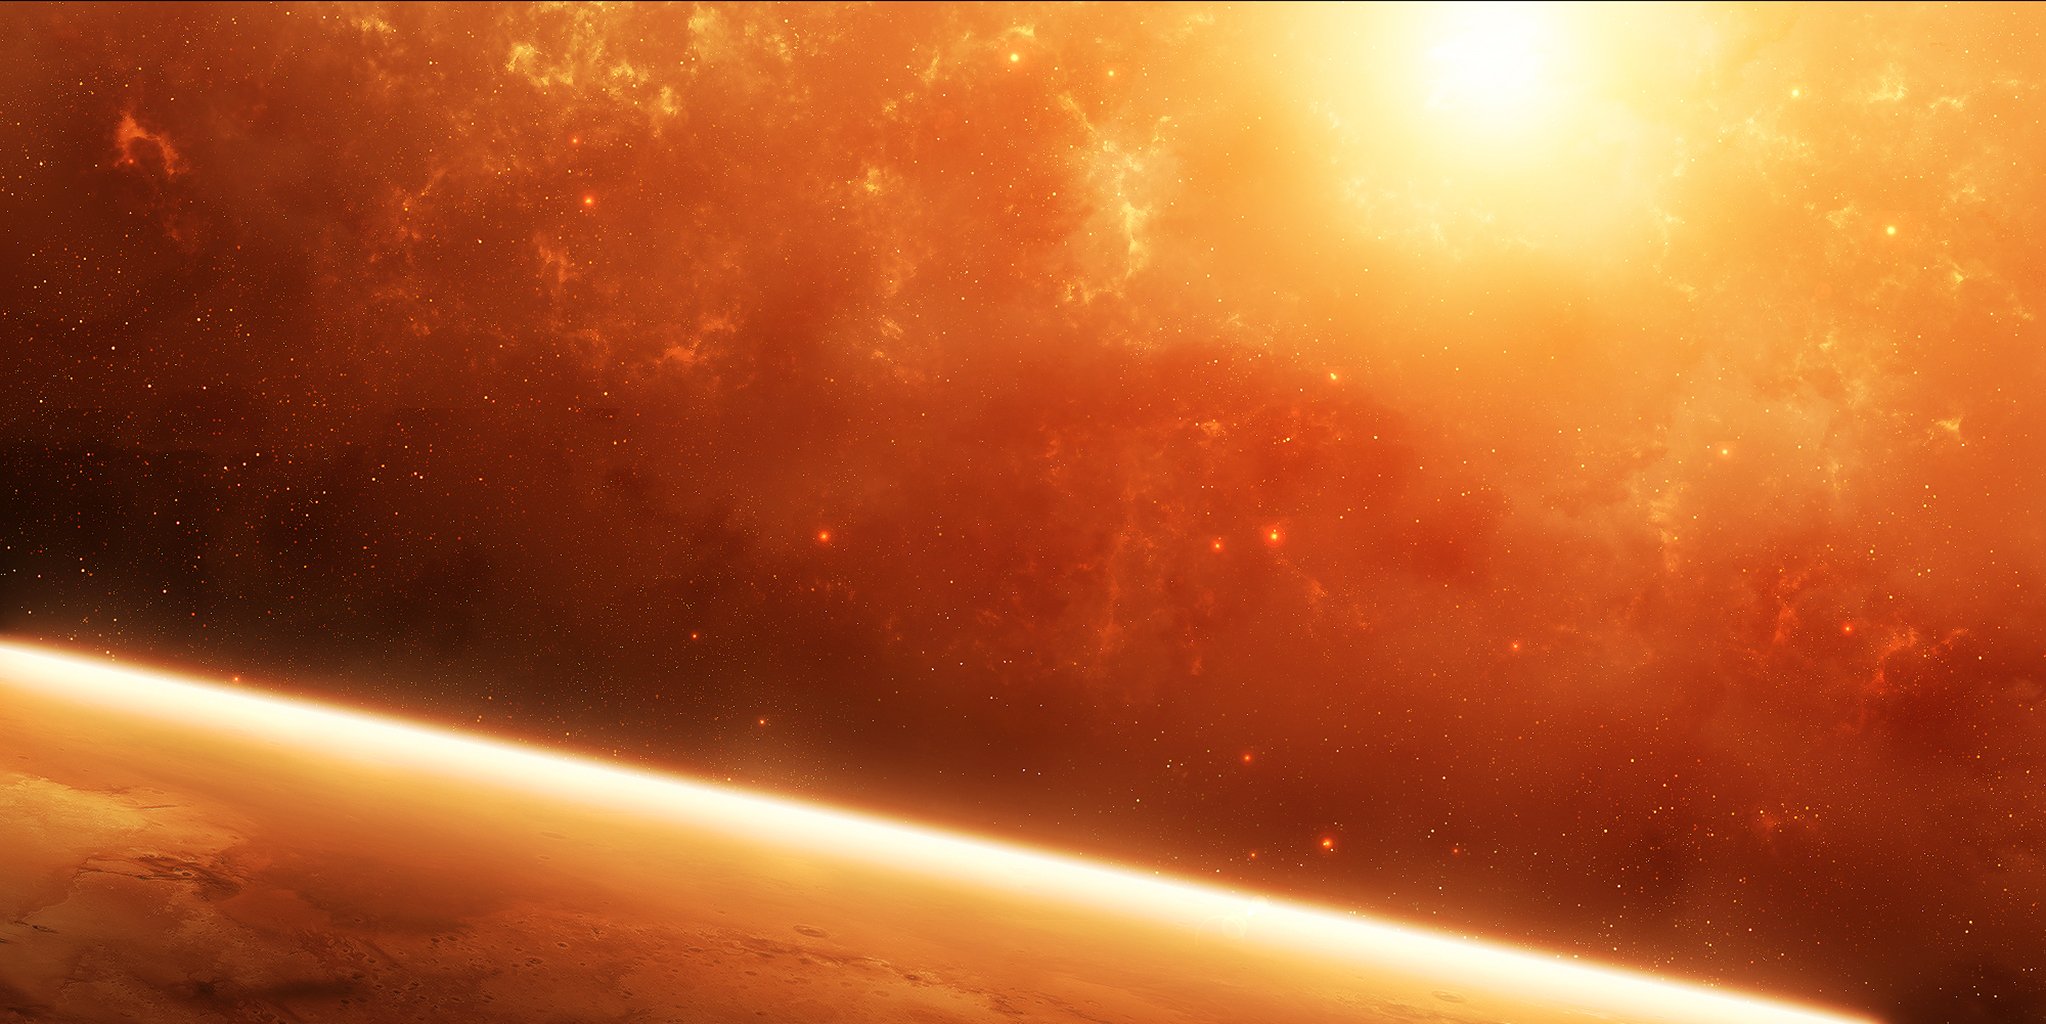 космос красная планета атмосфера звезды туманность солнце